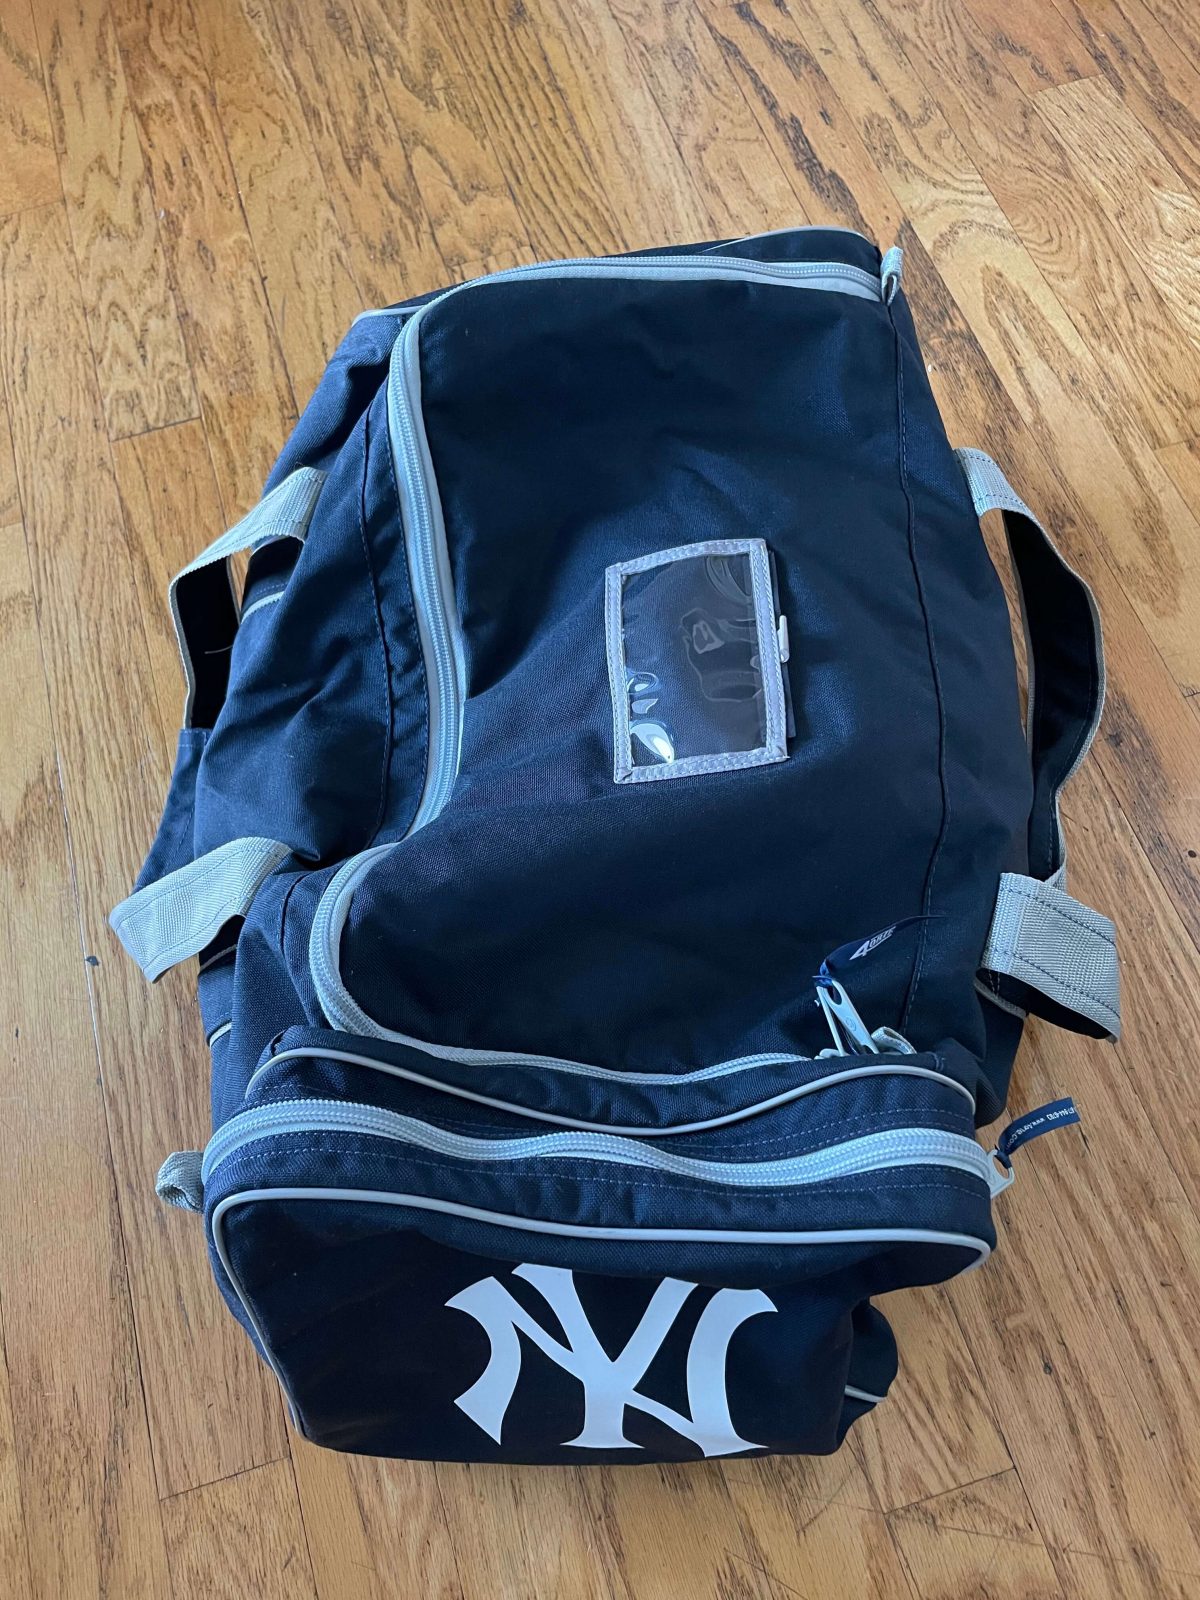 Official New York Yankees Bags, Yankees Backpacks, Luggage, Handbags